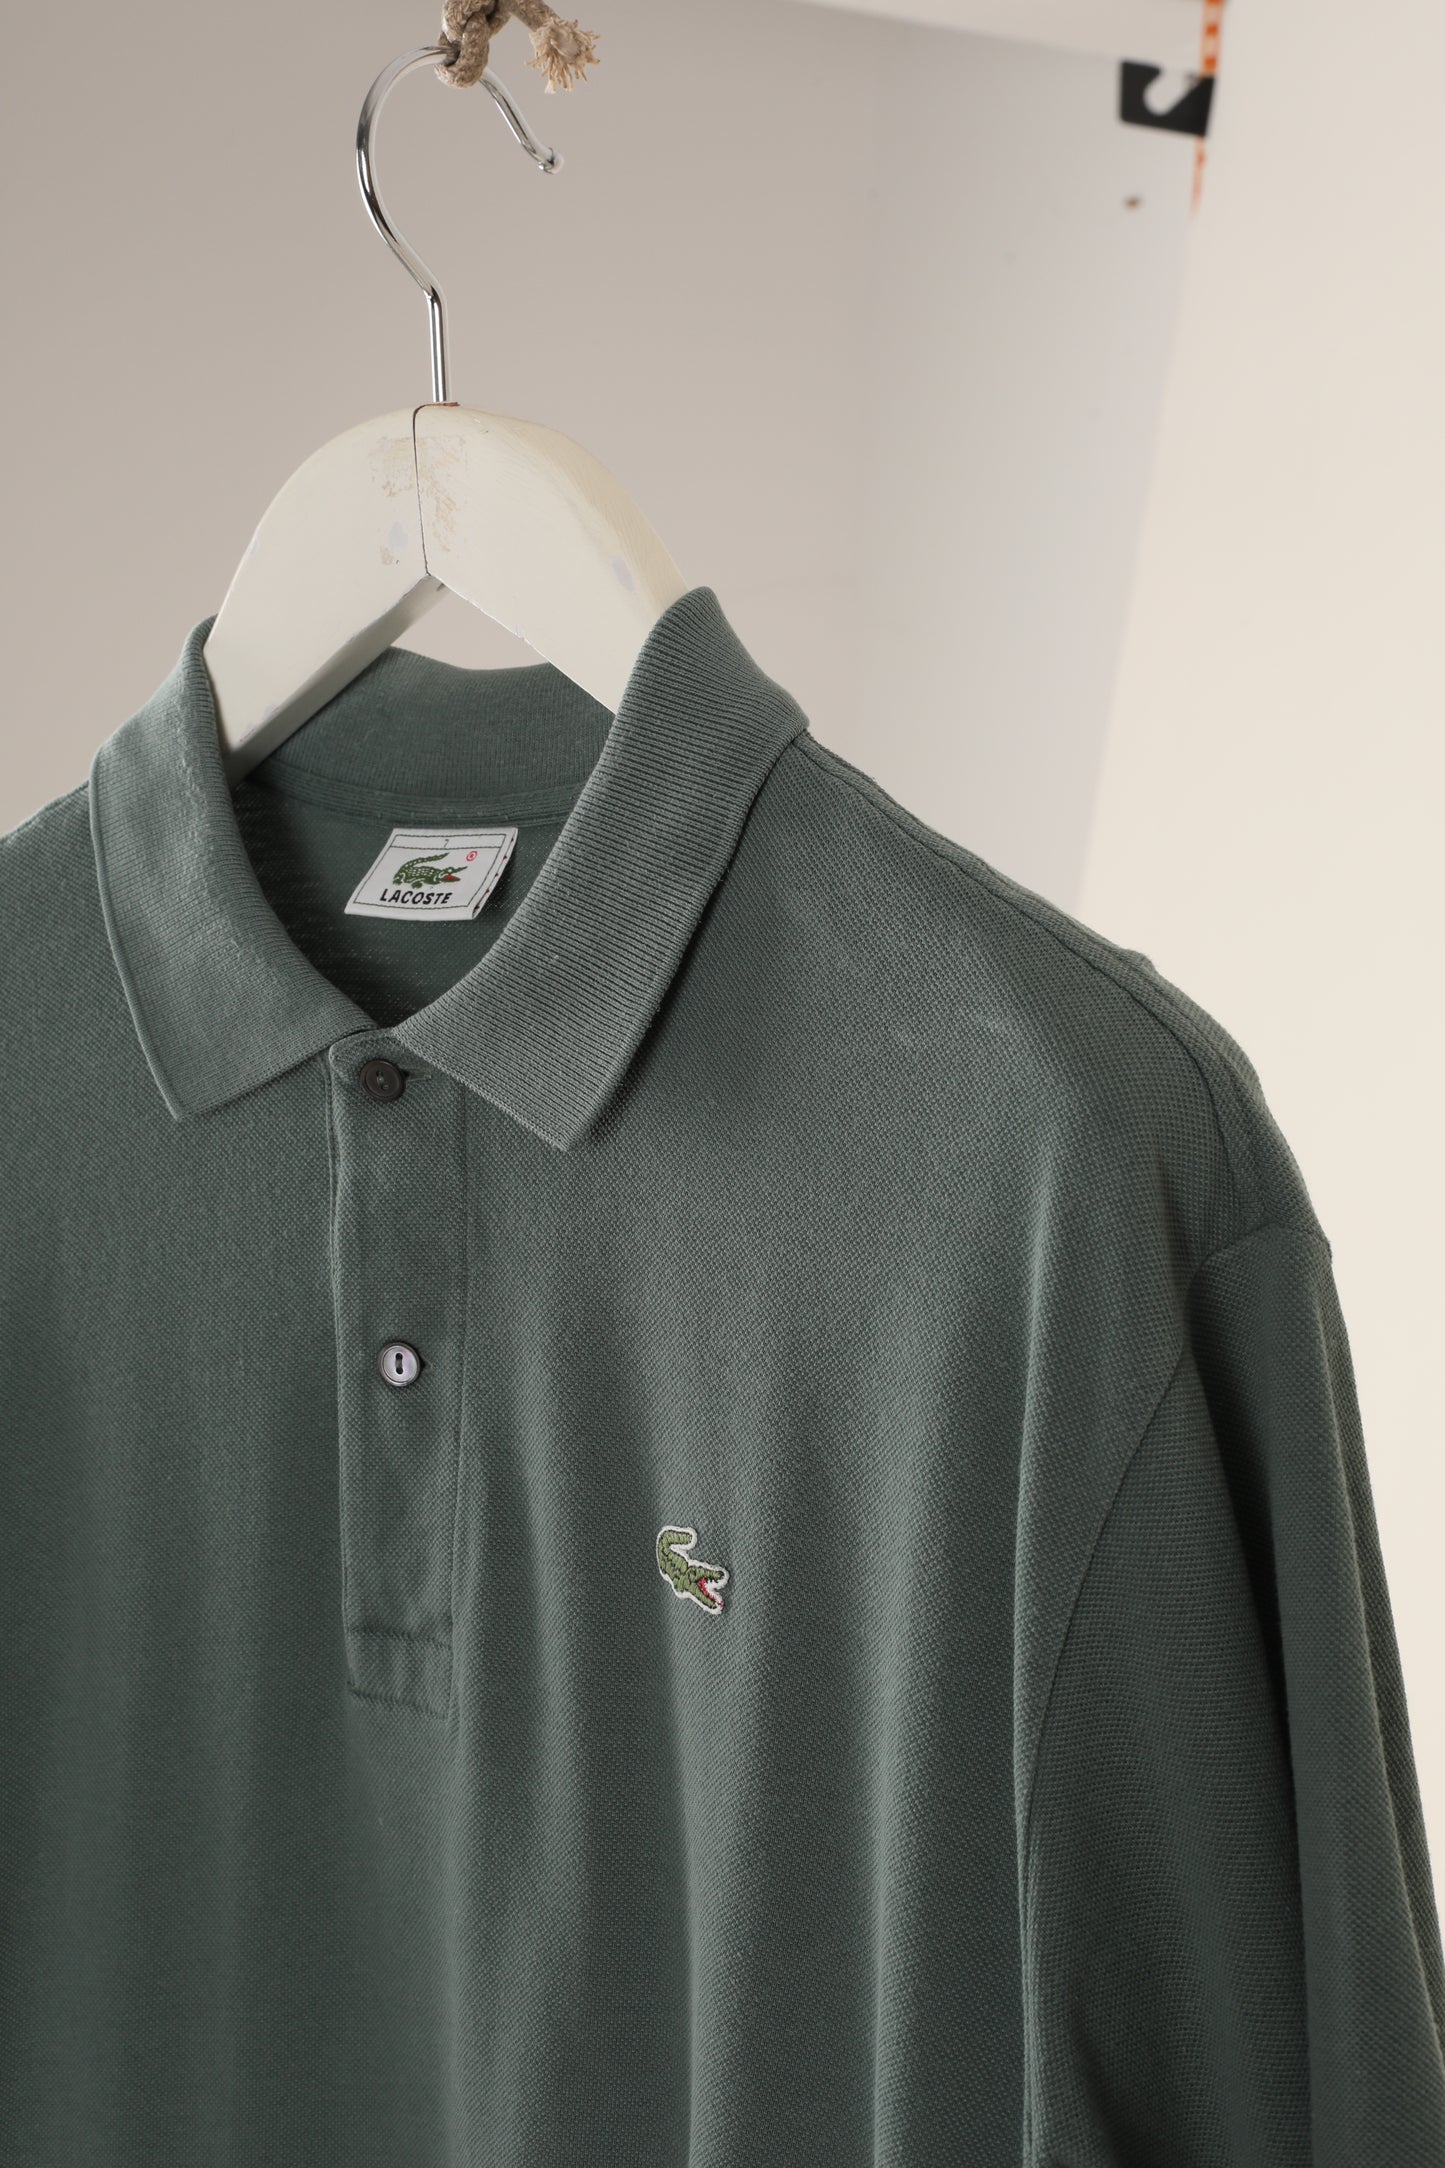 90s Lacoste polo shirt (7)